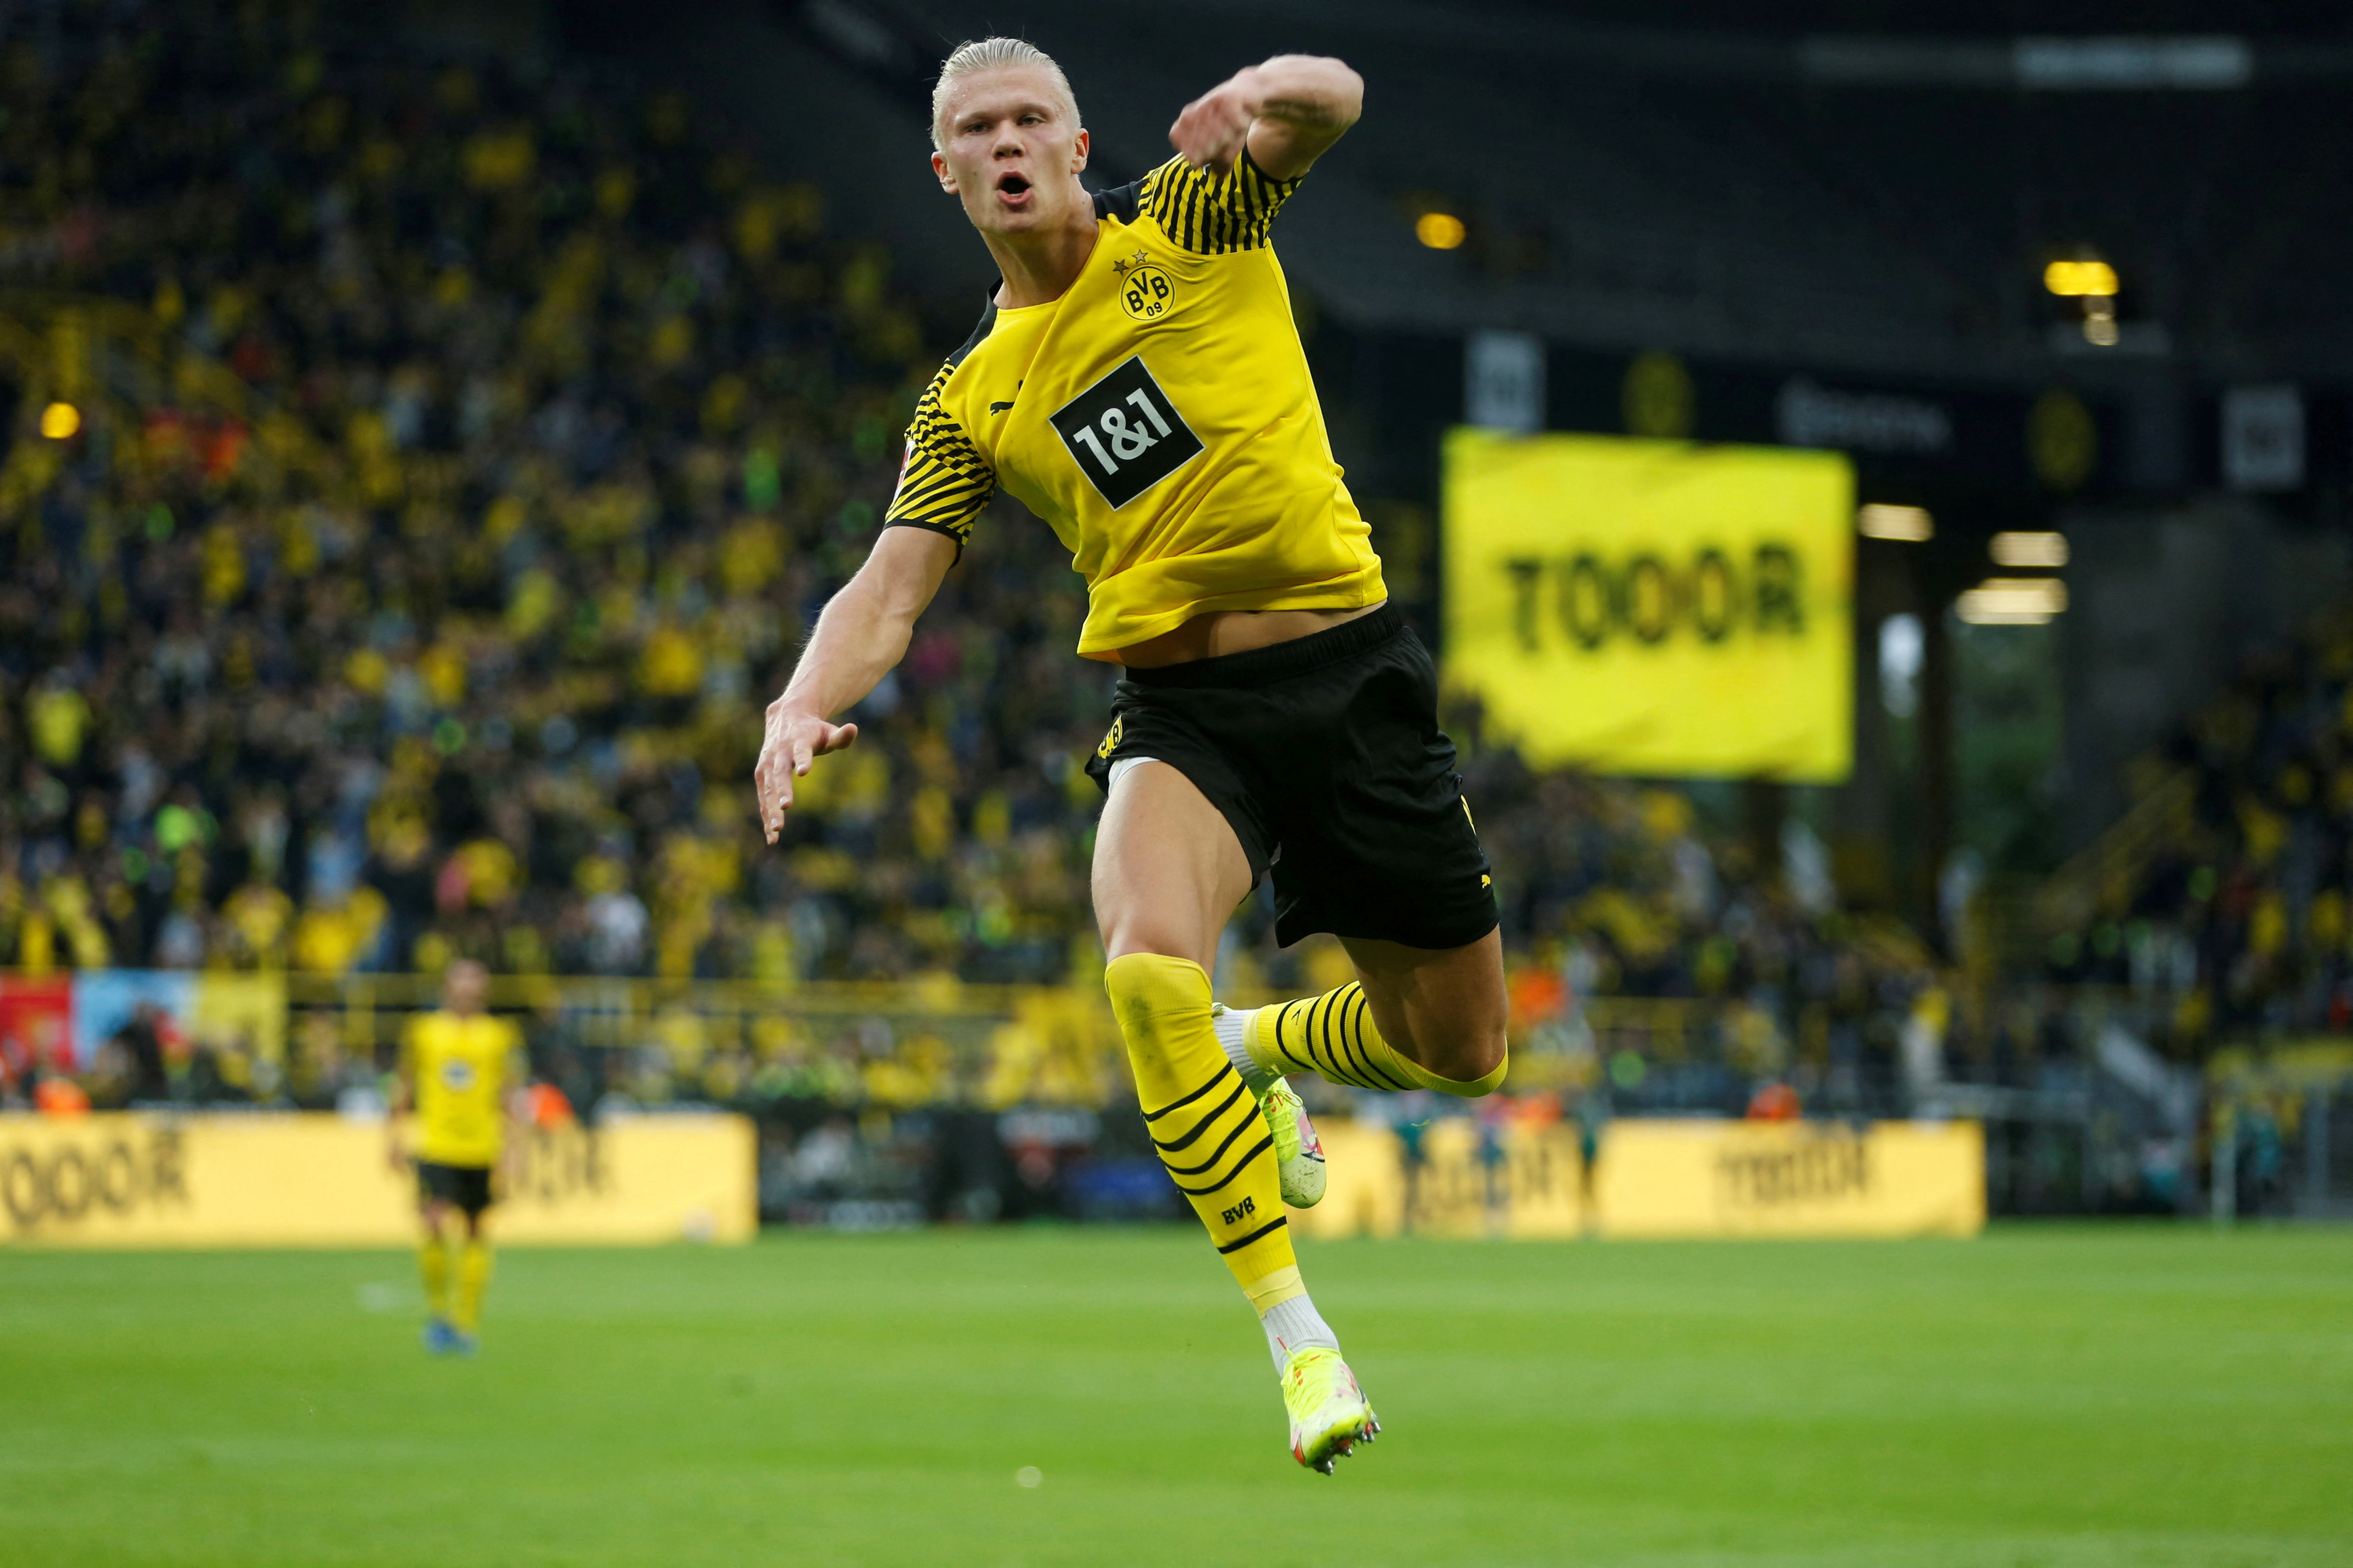 El noruego que brilló en Borussia Dortmund será nuevo jugador del Manchester City, 150 millones de euros